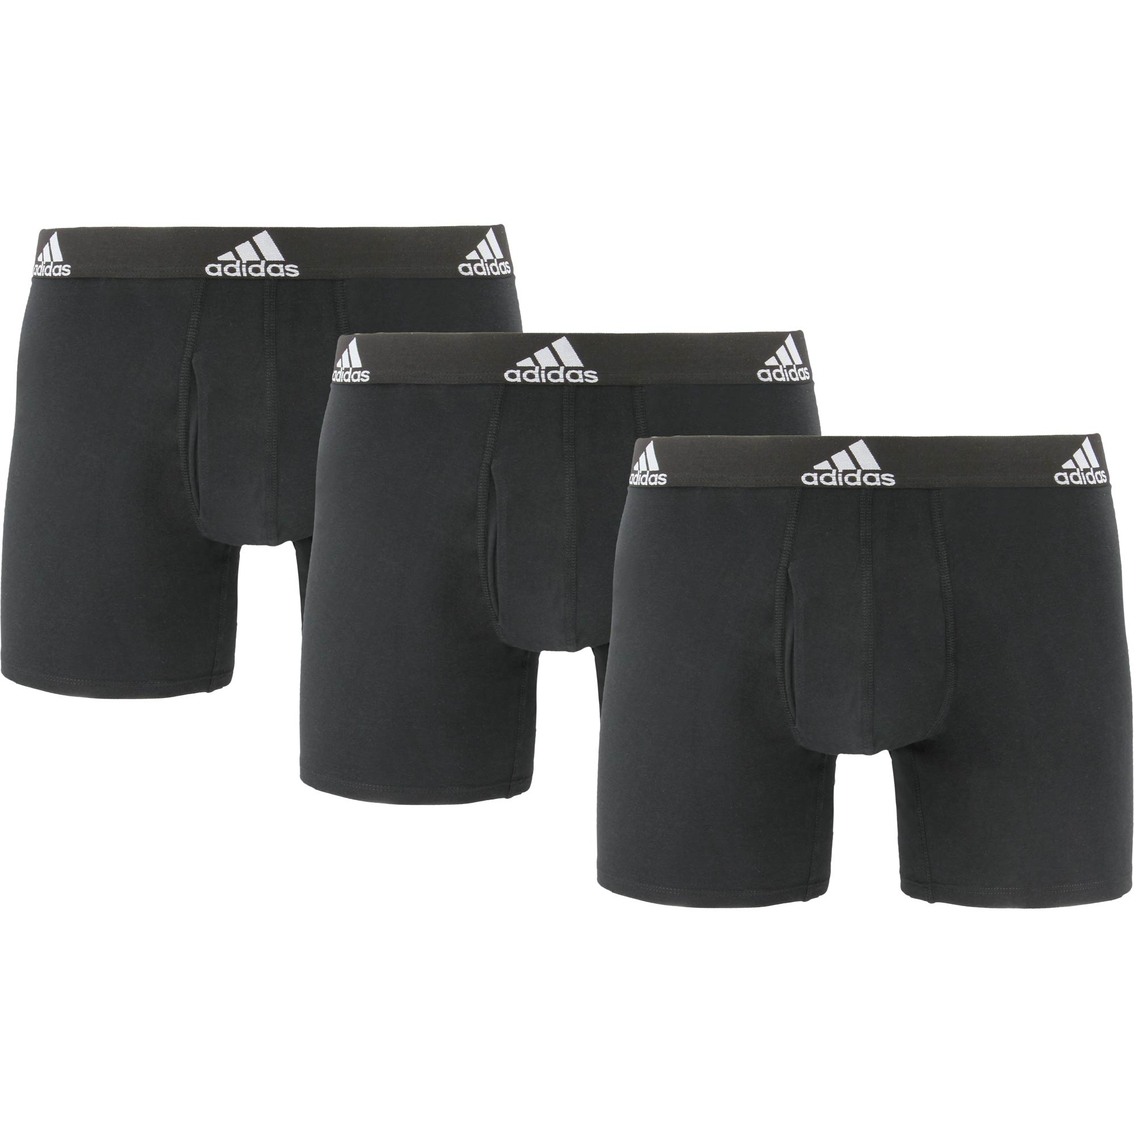 Adidas Men's Stretch Cotton Boxer Briefs 3 Pk | Underwear | Clothing ...